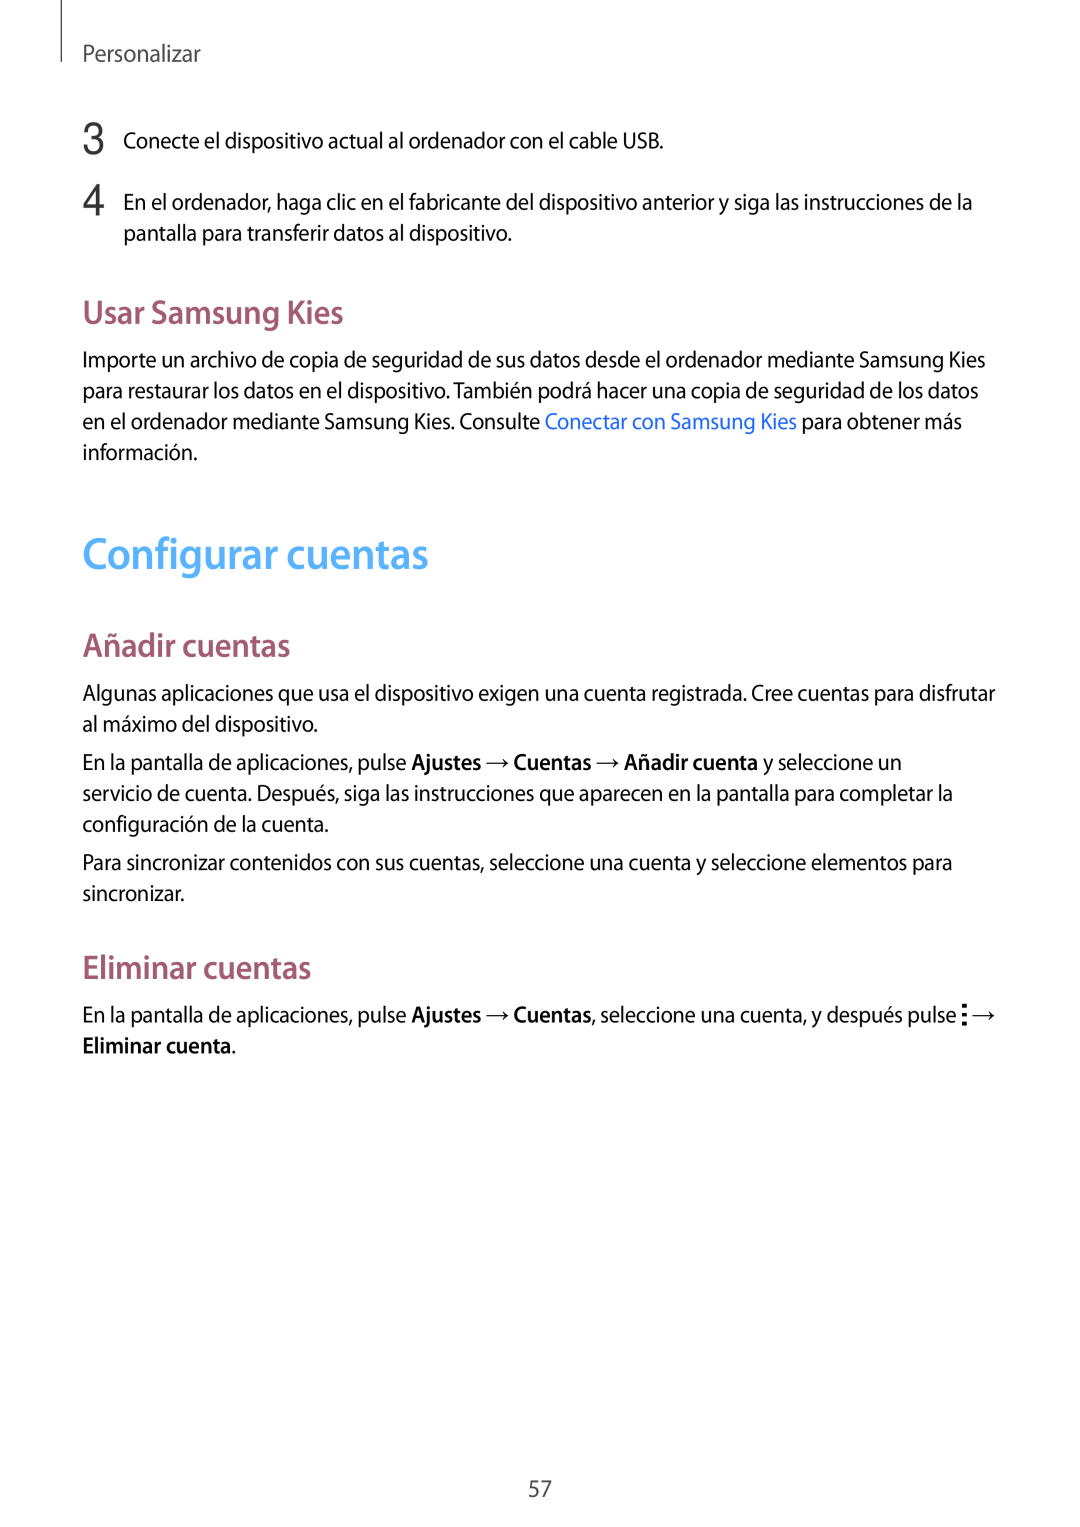 Samsung SM-A500FZDUPHE manual Configurar cuentas, Usar Samsung Kies, Añadir cuentas, Eliminar cuentas, Personalizar 